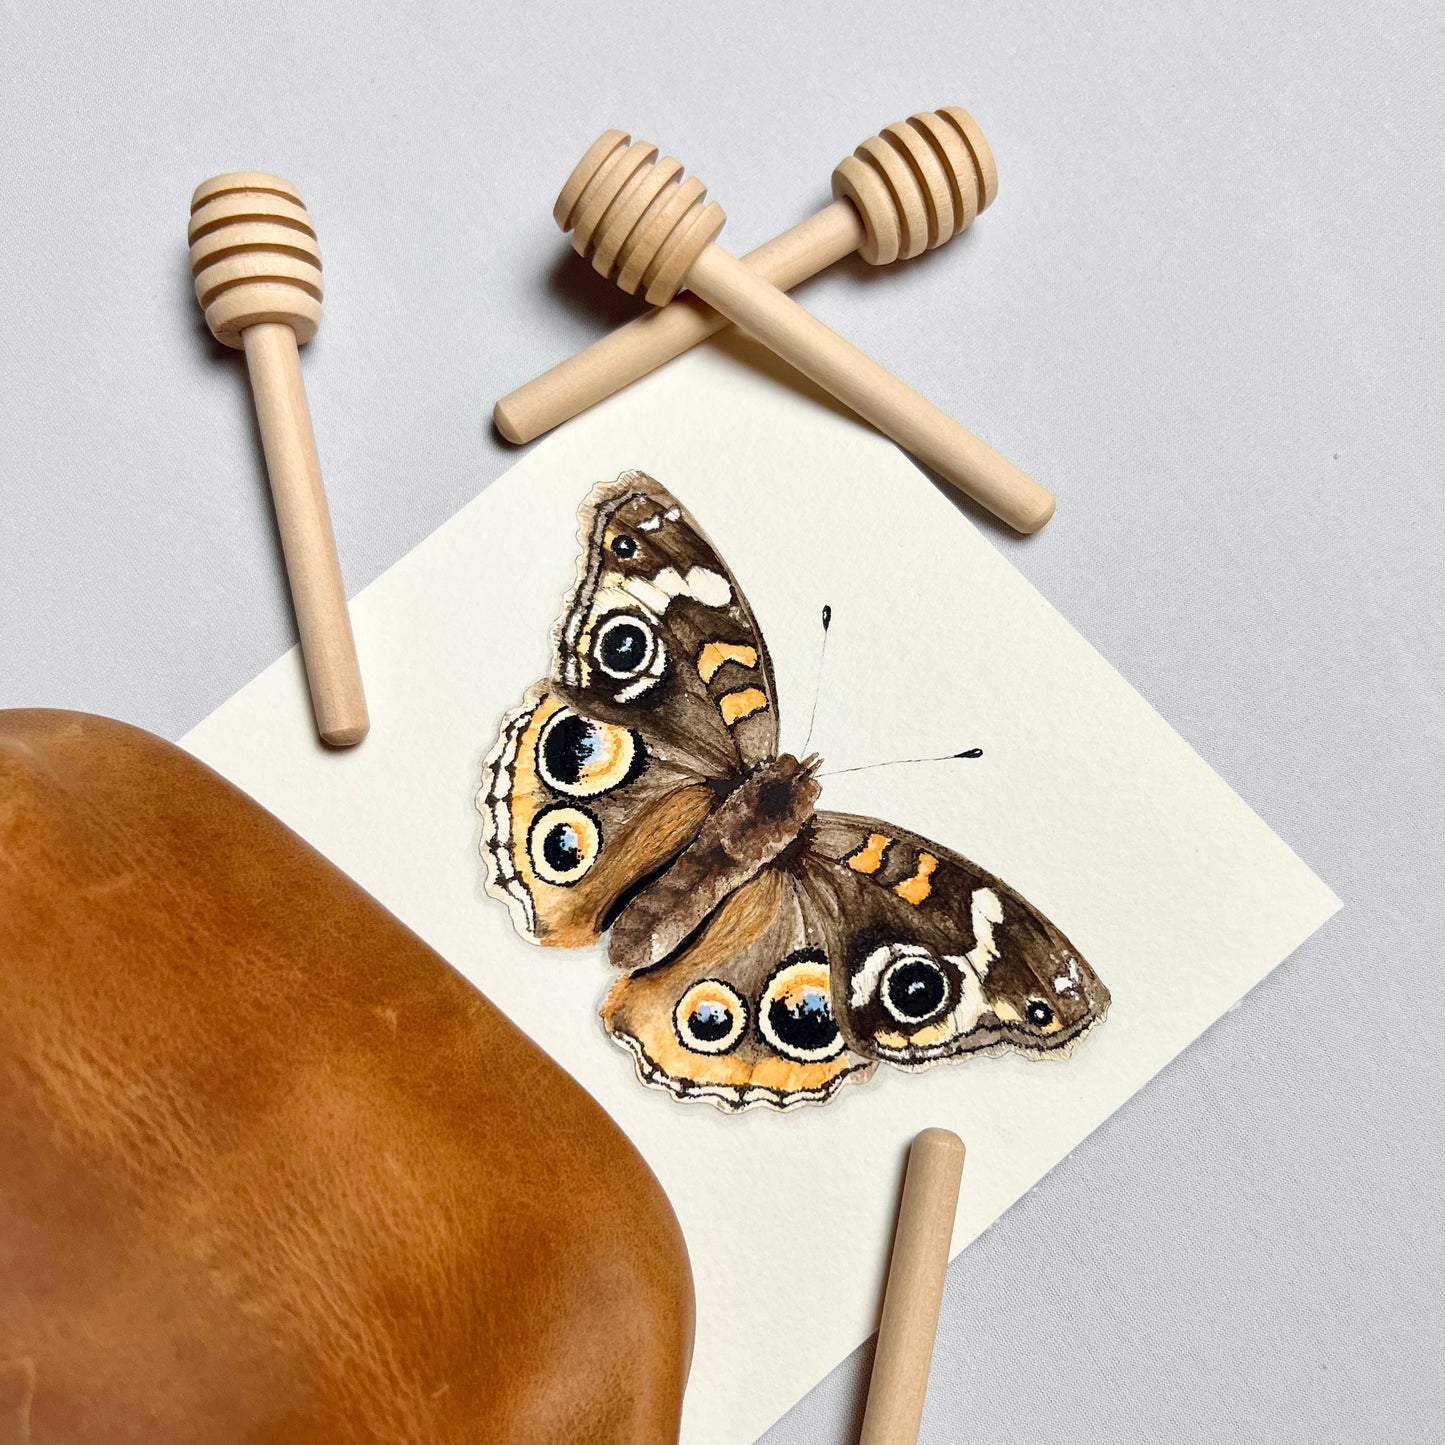 Common Buckeye Butterfly Art Print - Jophiel